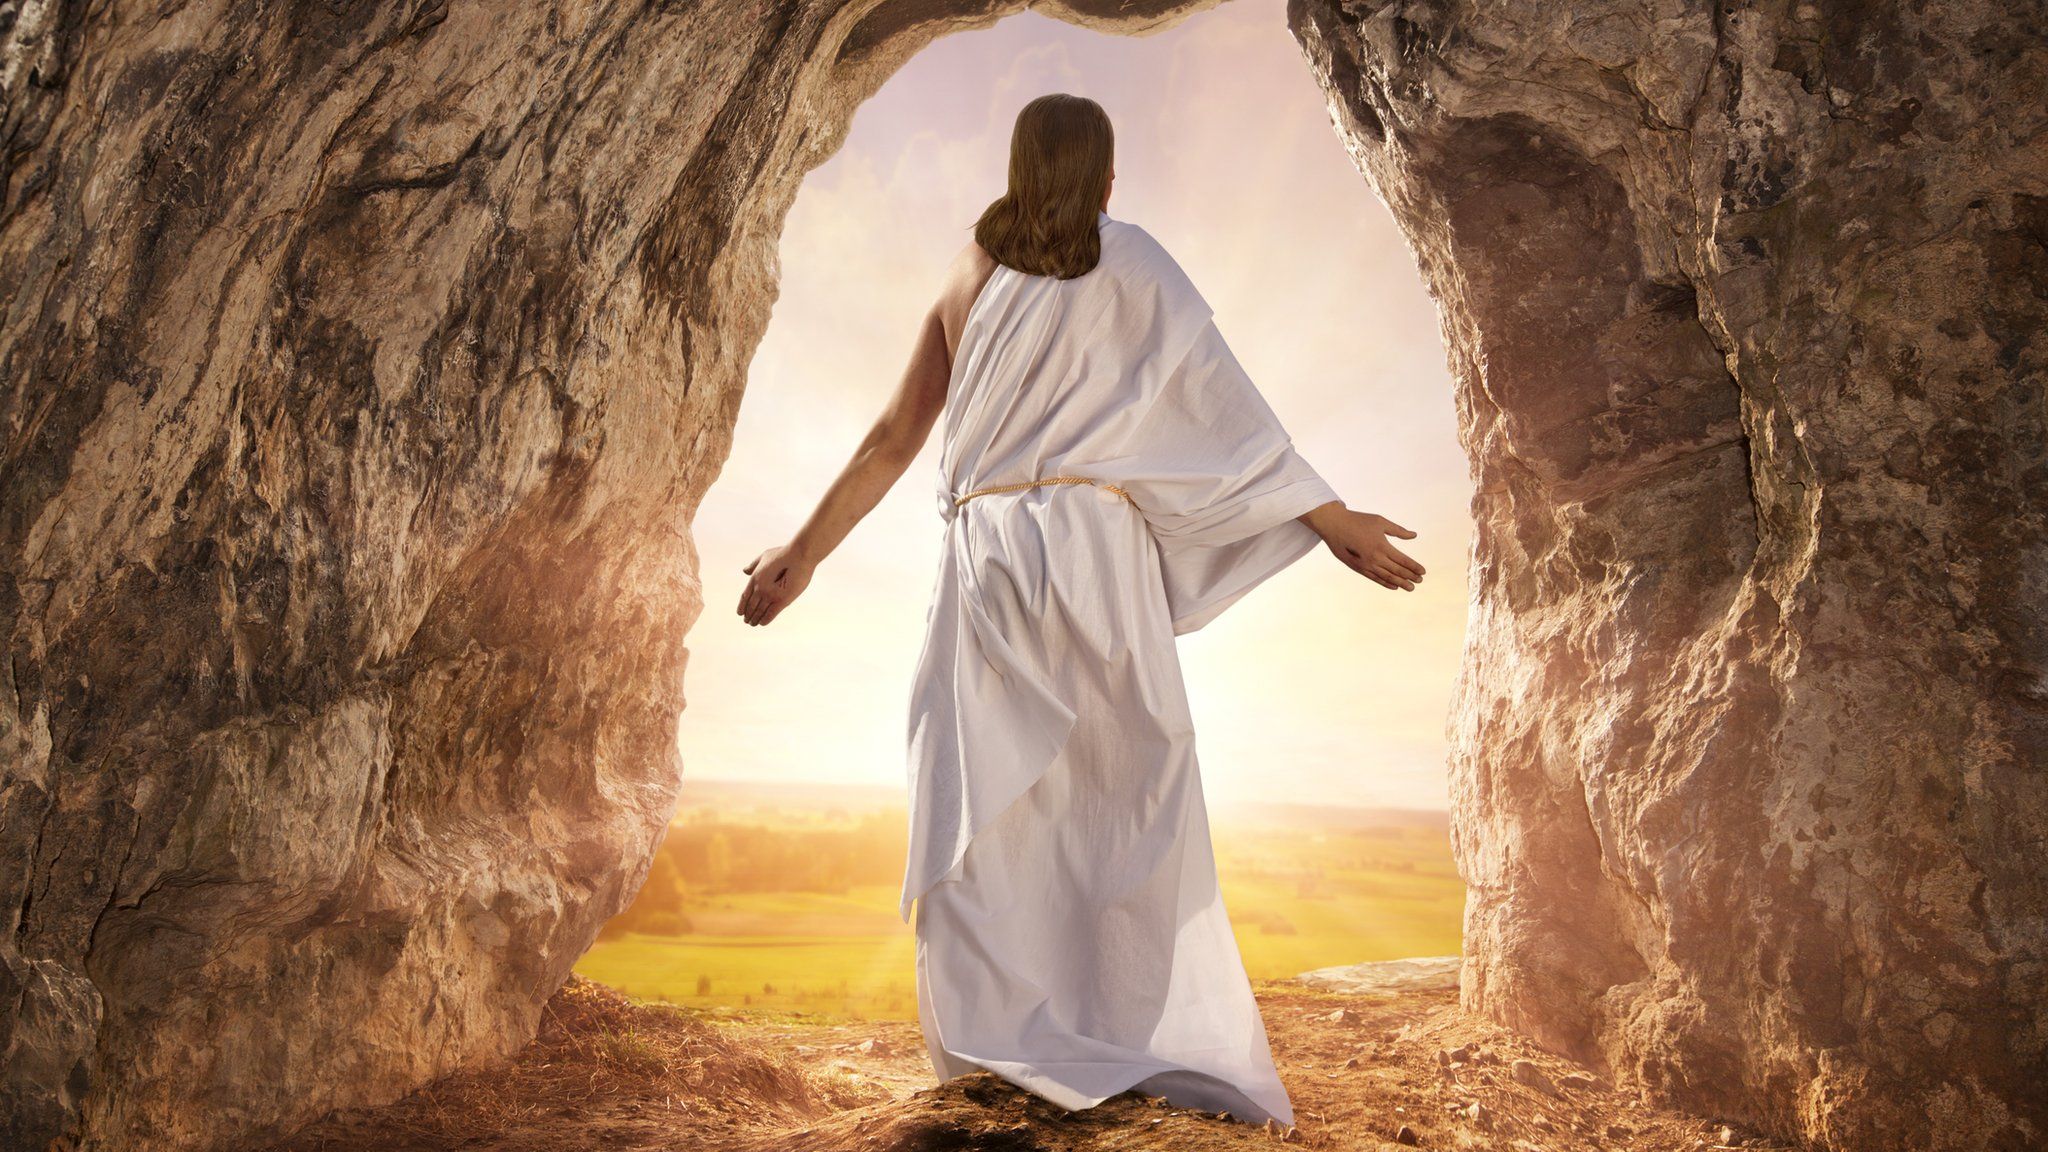 Christ resurrected